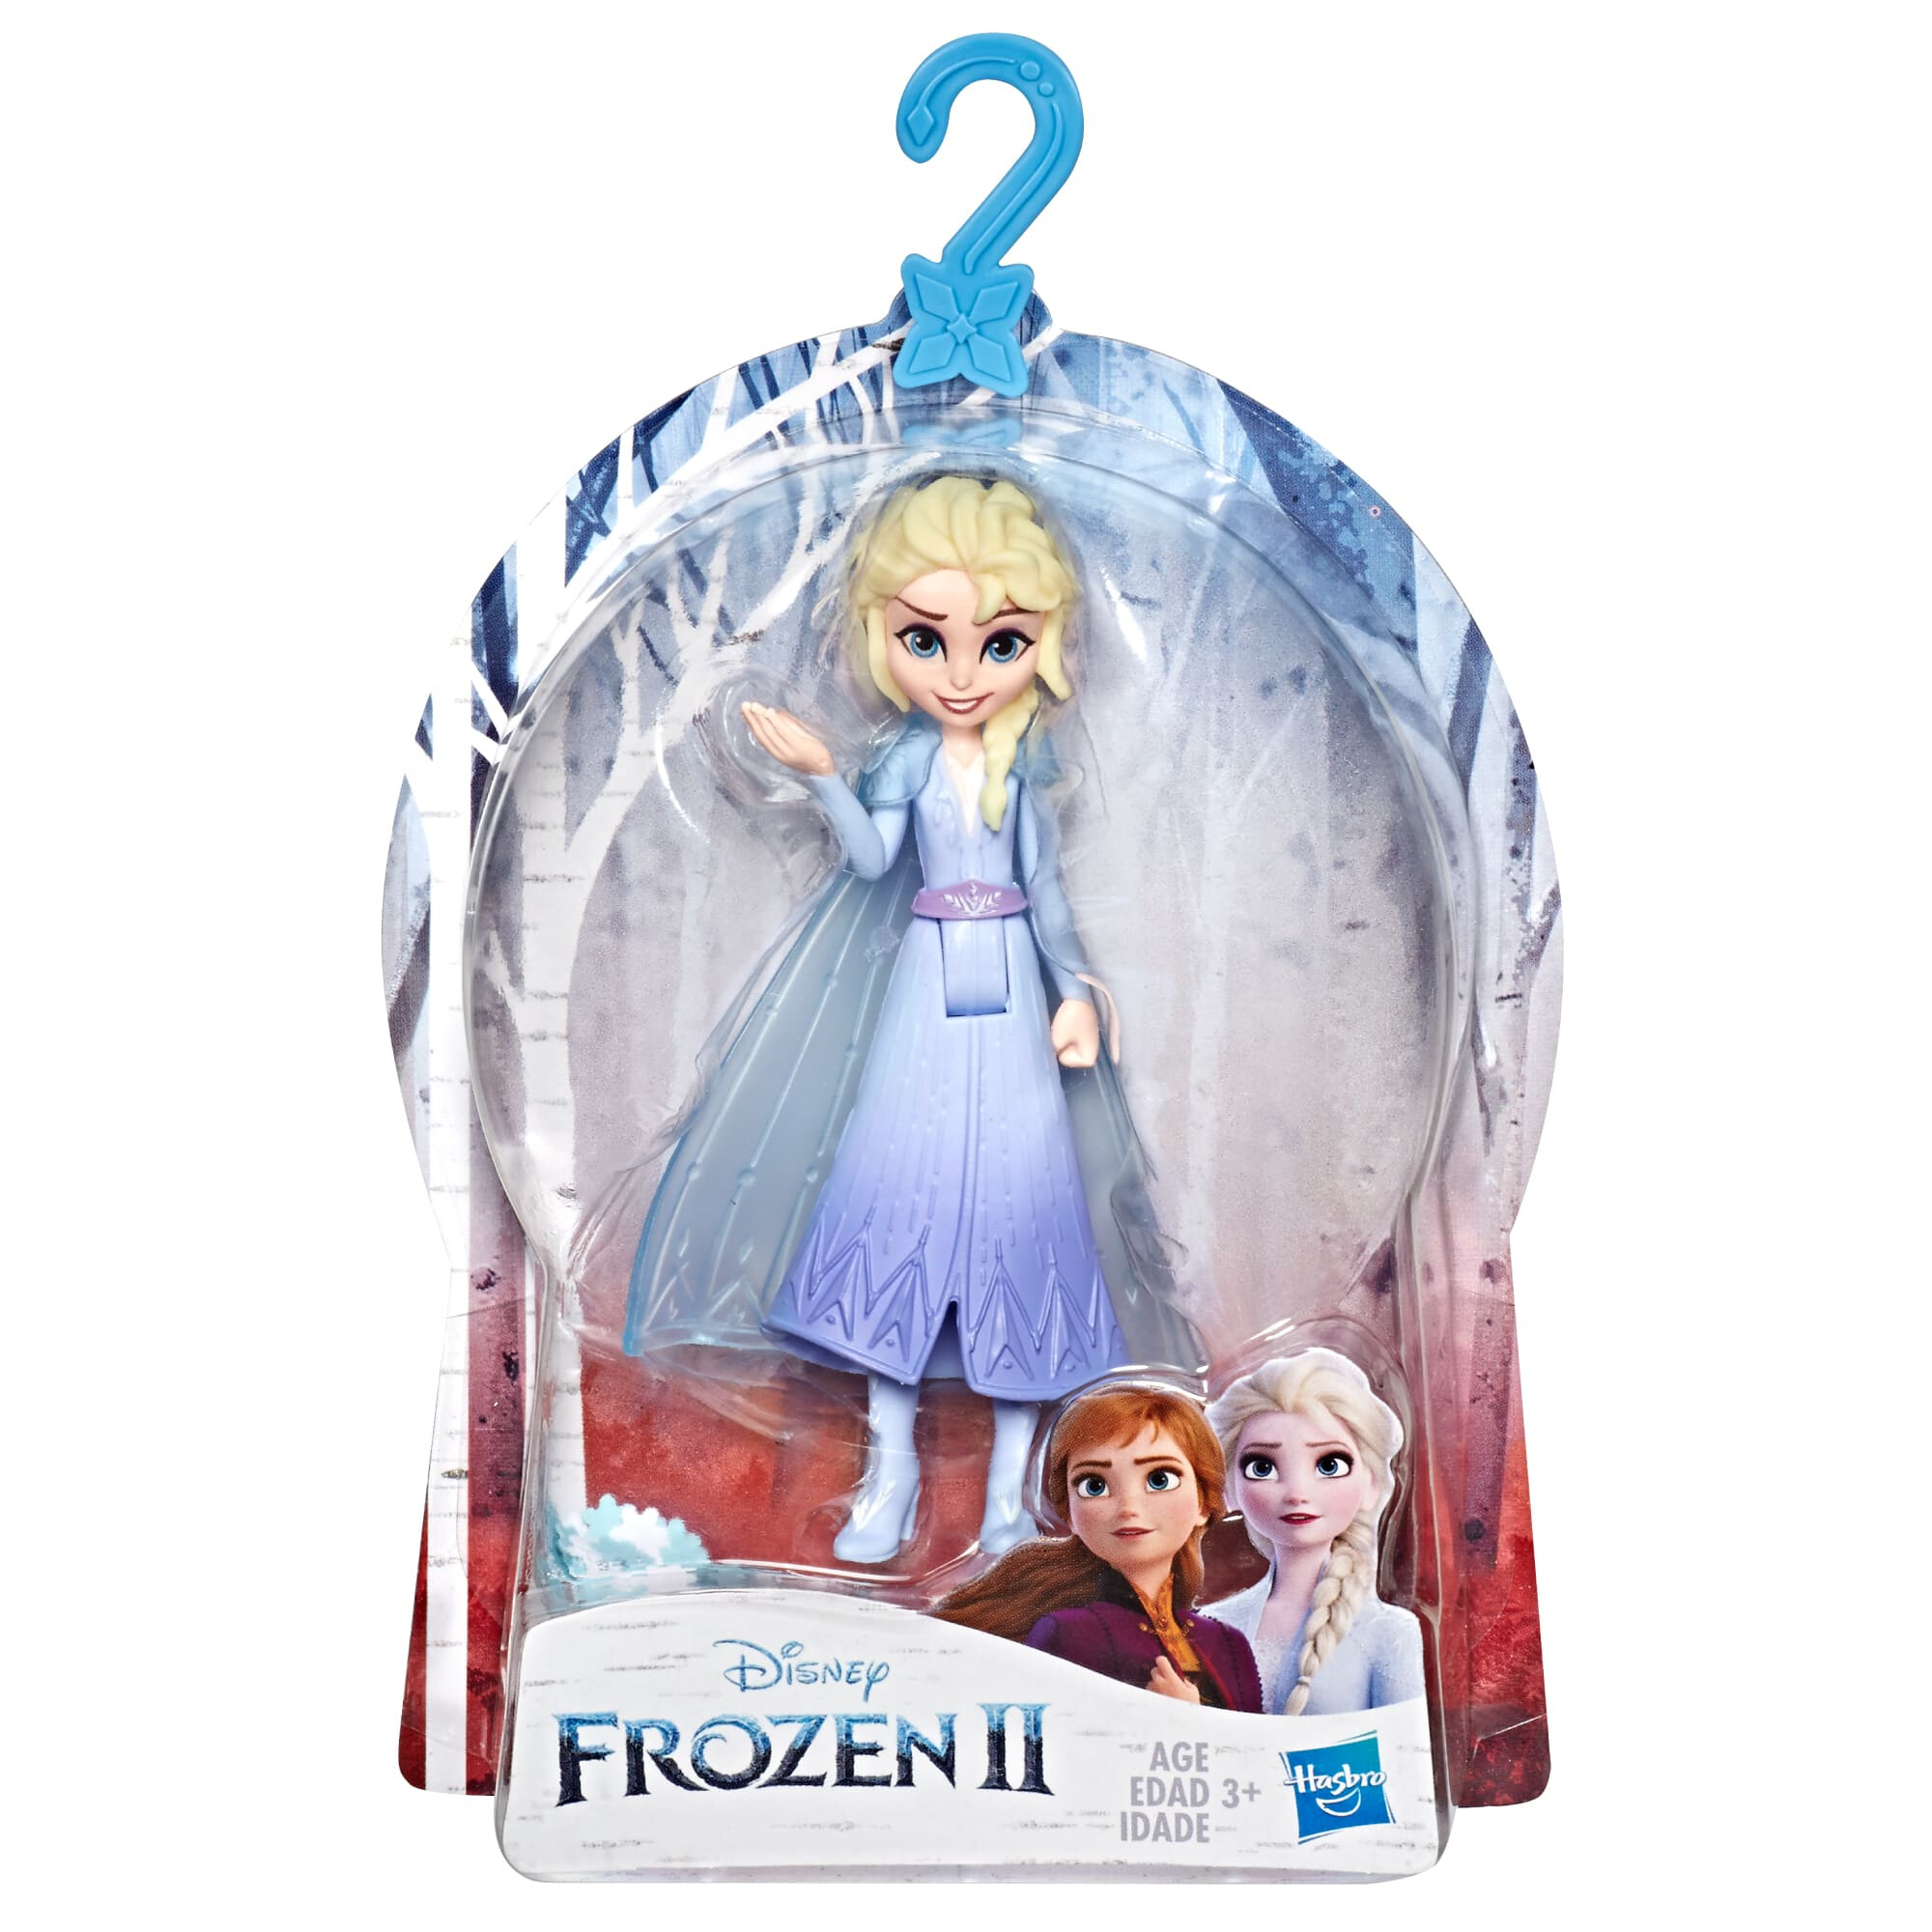 Frozen 2 Figures